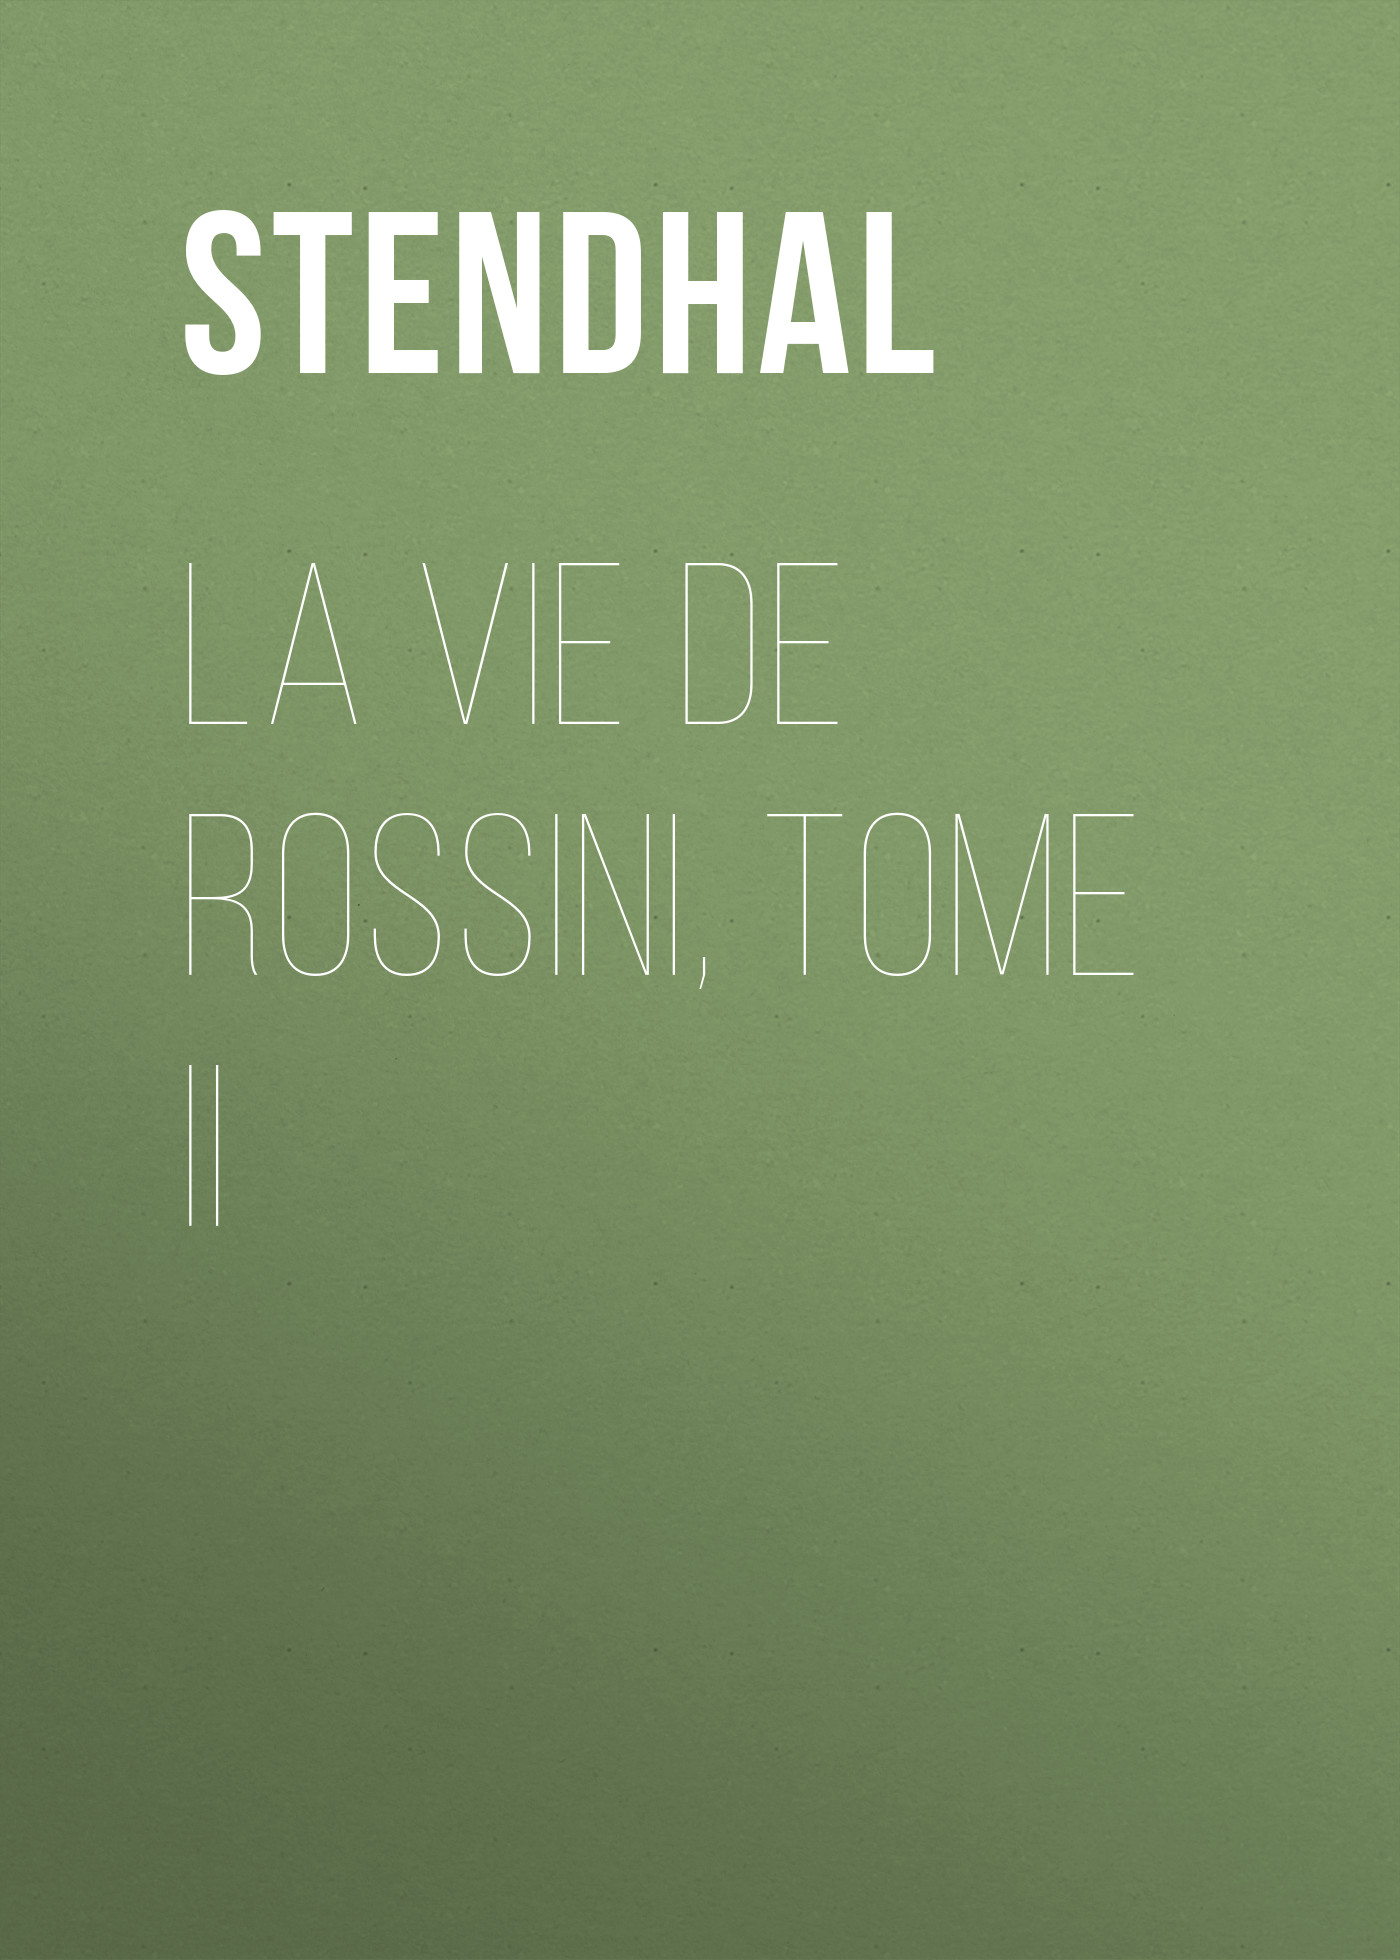 La vie de Rossini, tome II